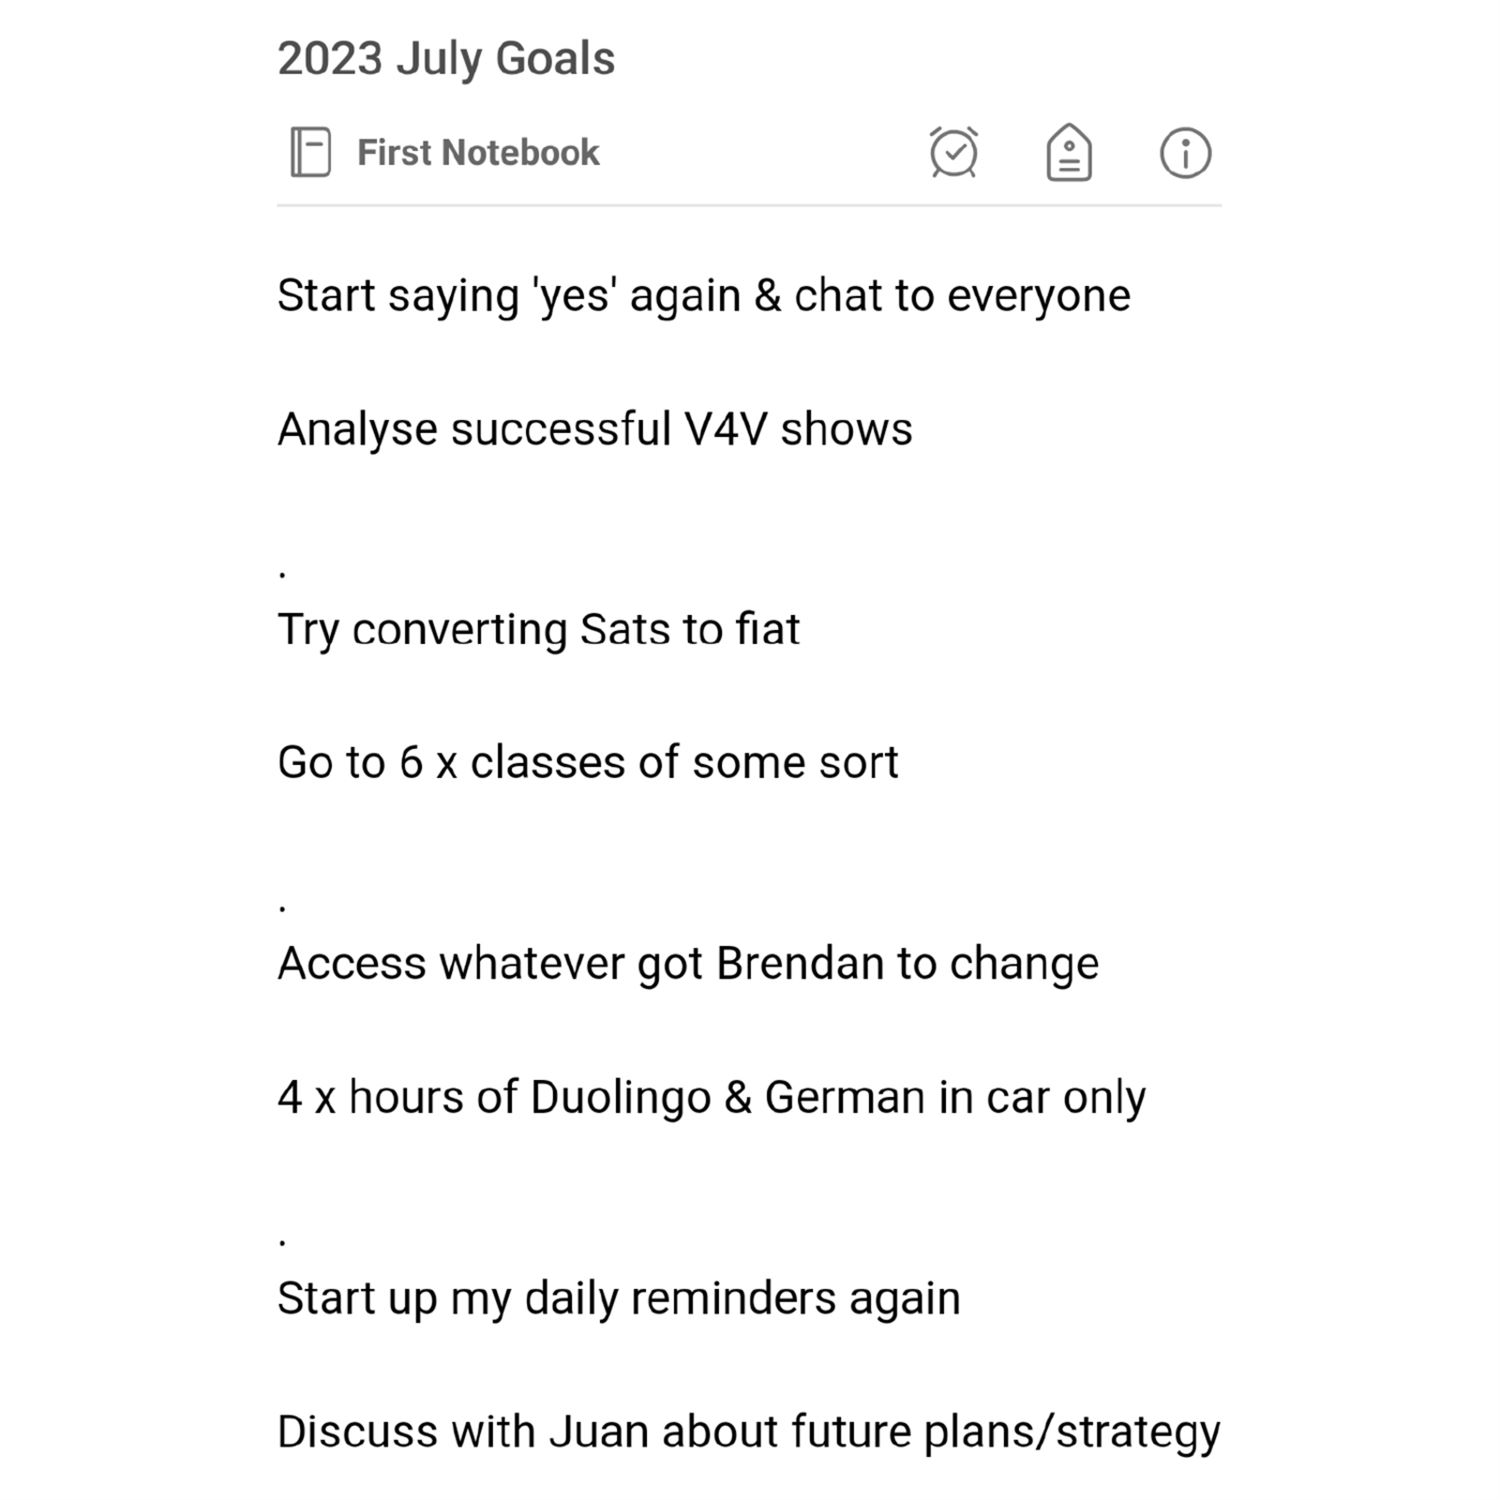 Kyrin's July 2023 Goals